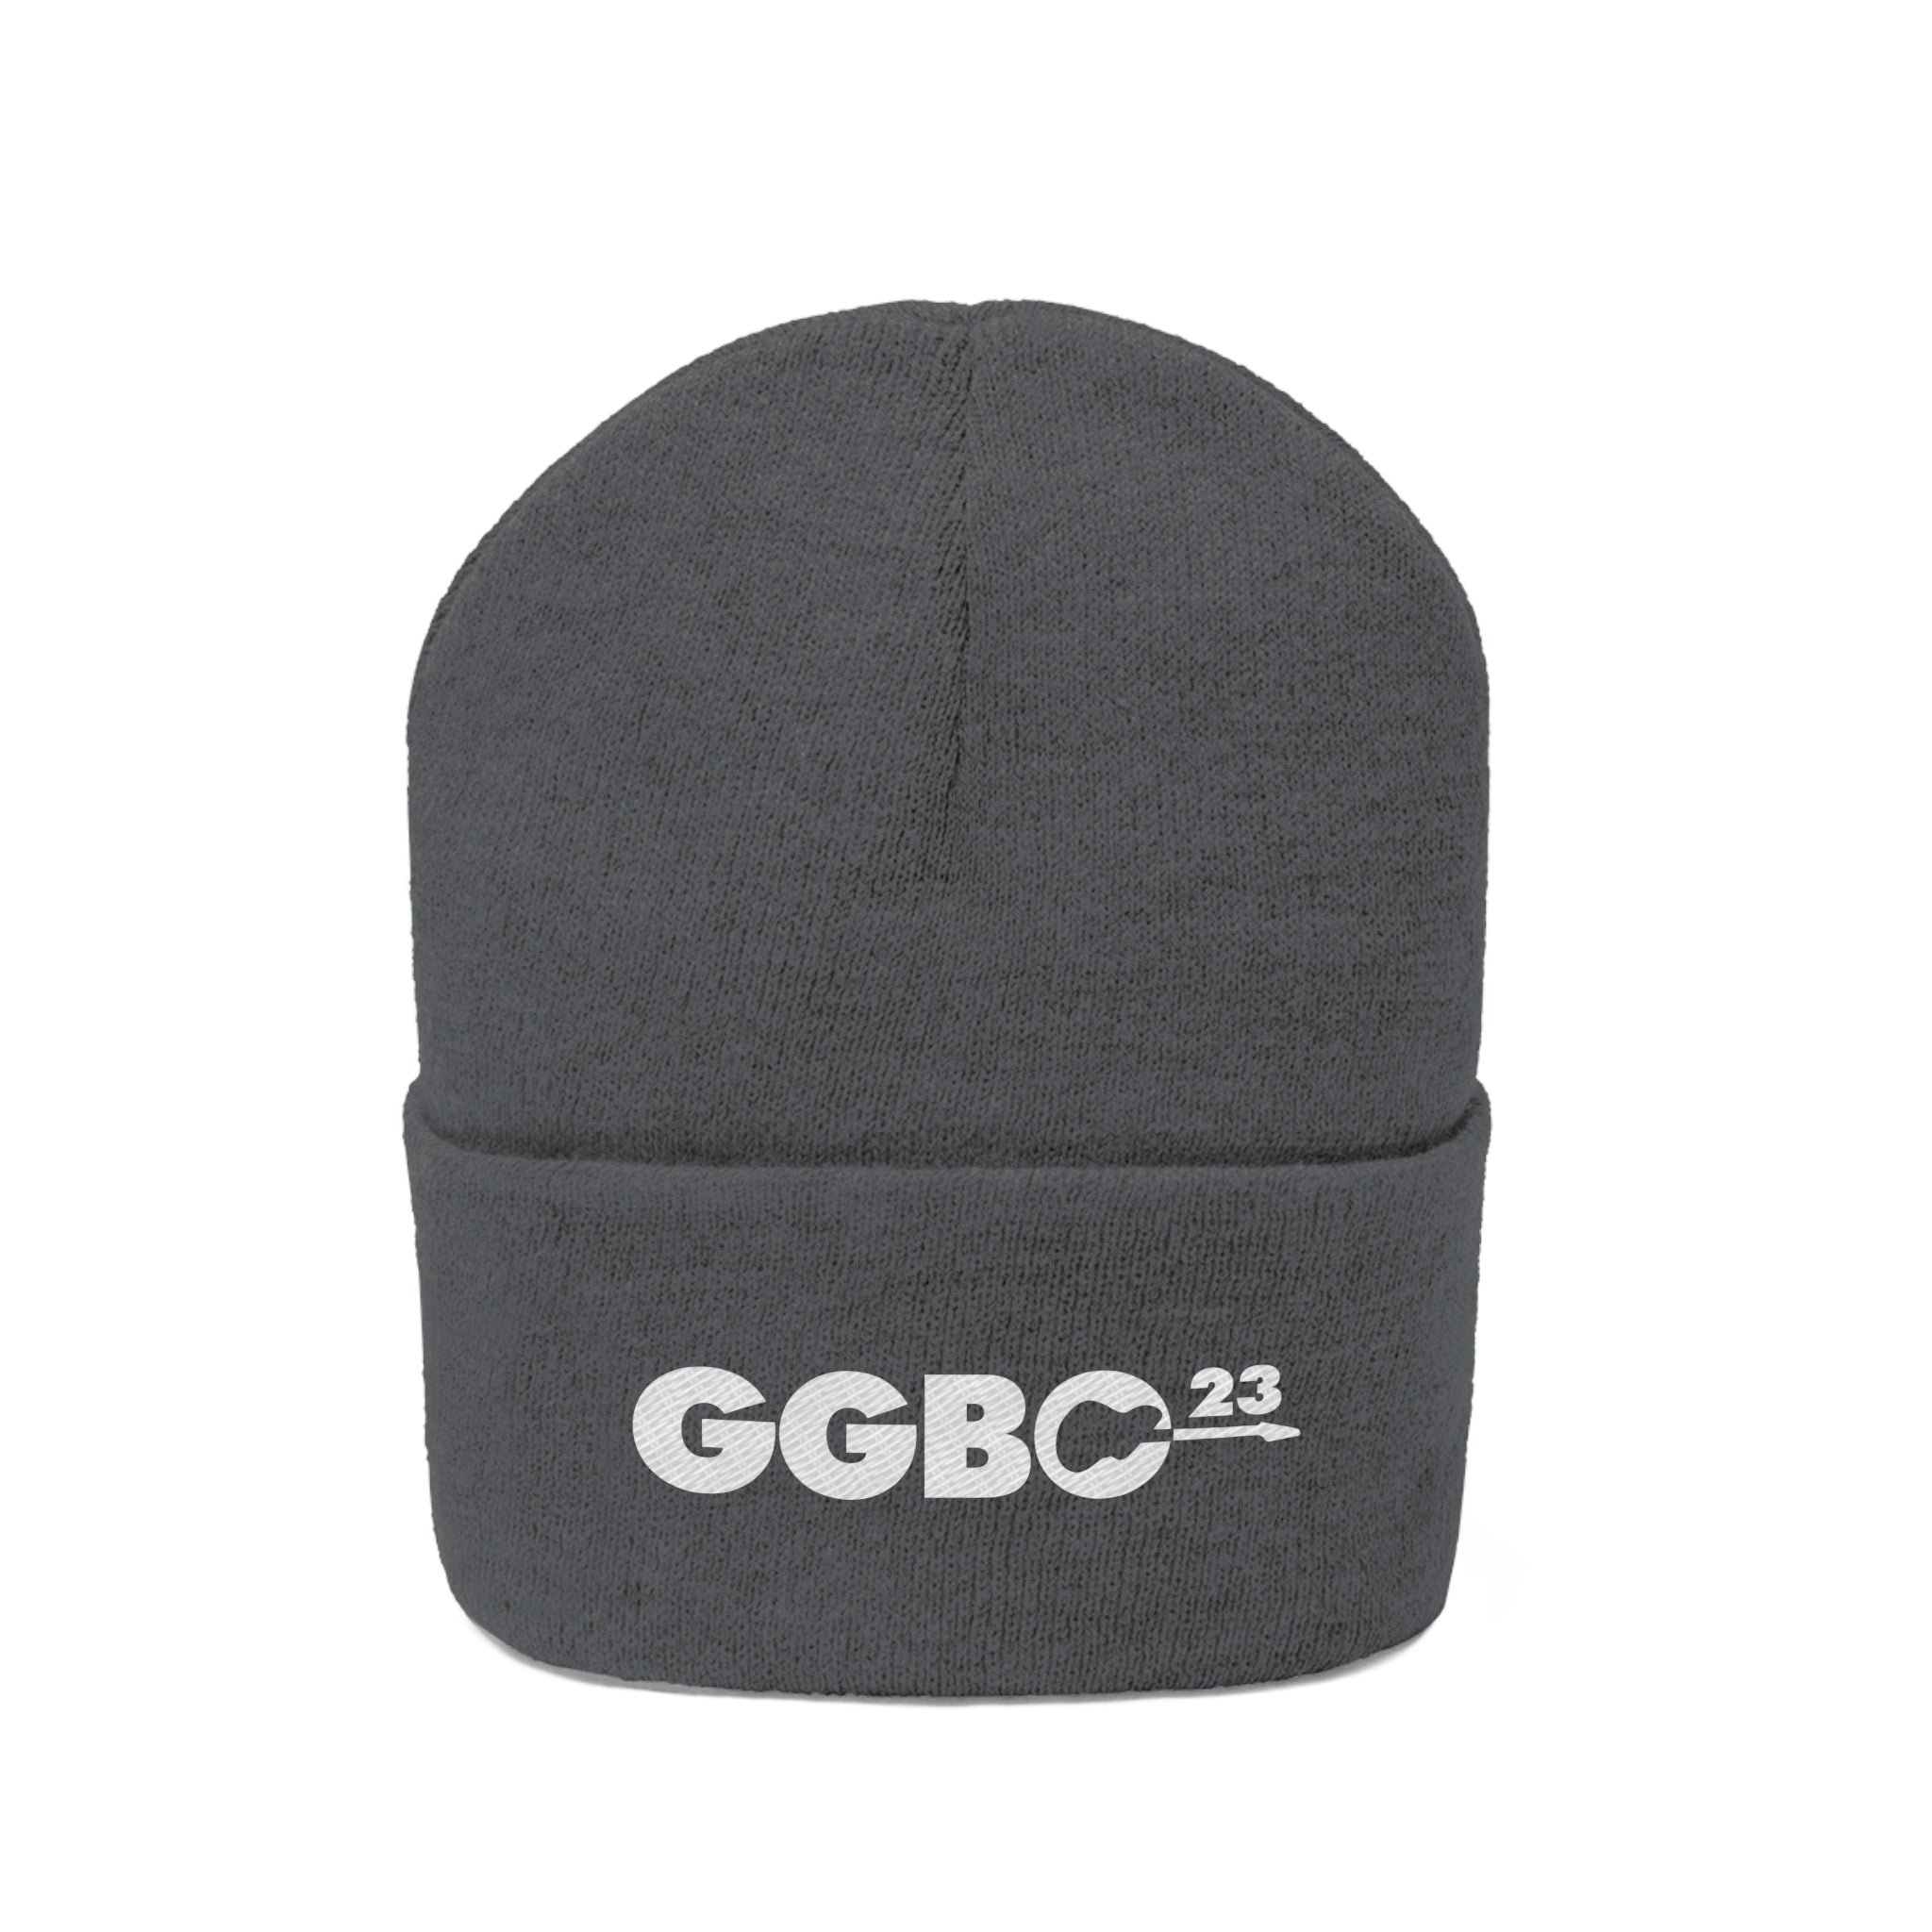 GGBO2023 Knit Beanie